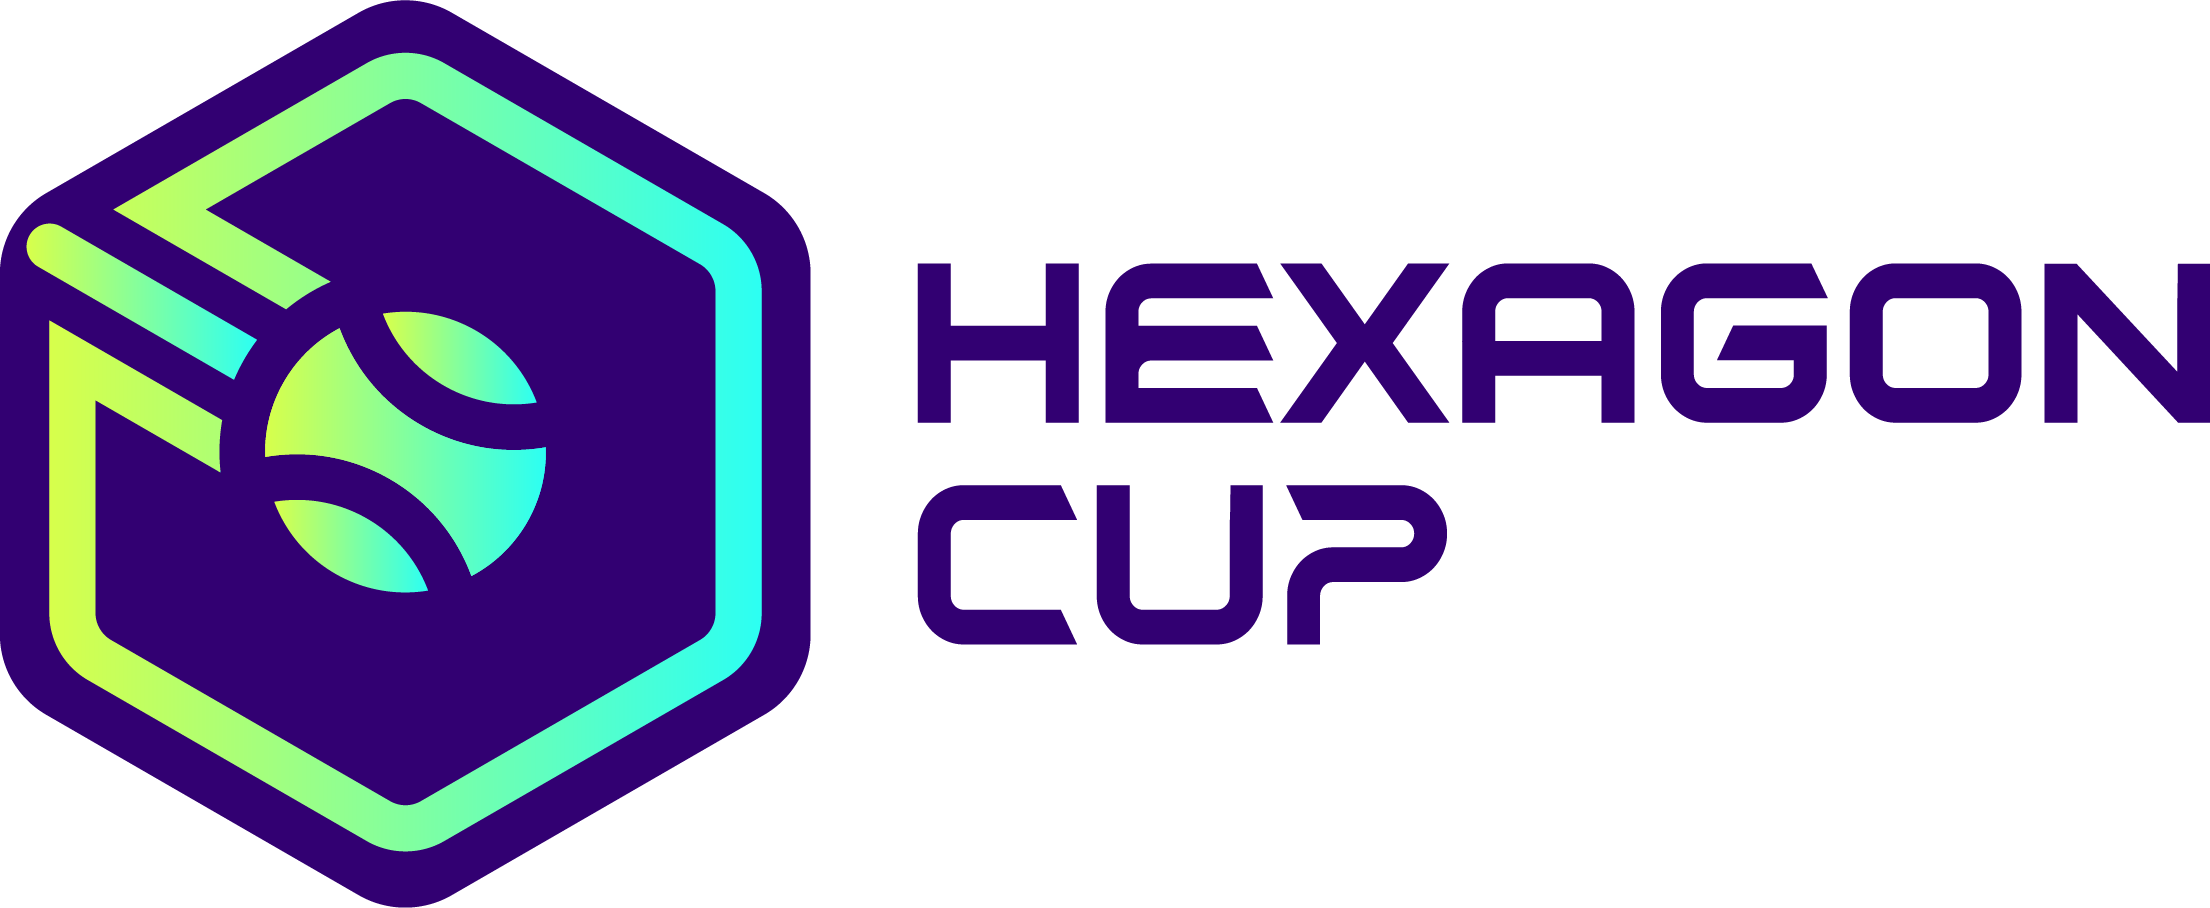 Hexagon Cup anuncia su asociación con Ticketmaster para la venta de entradas del evento inaugural